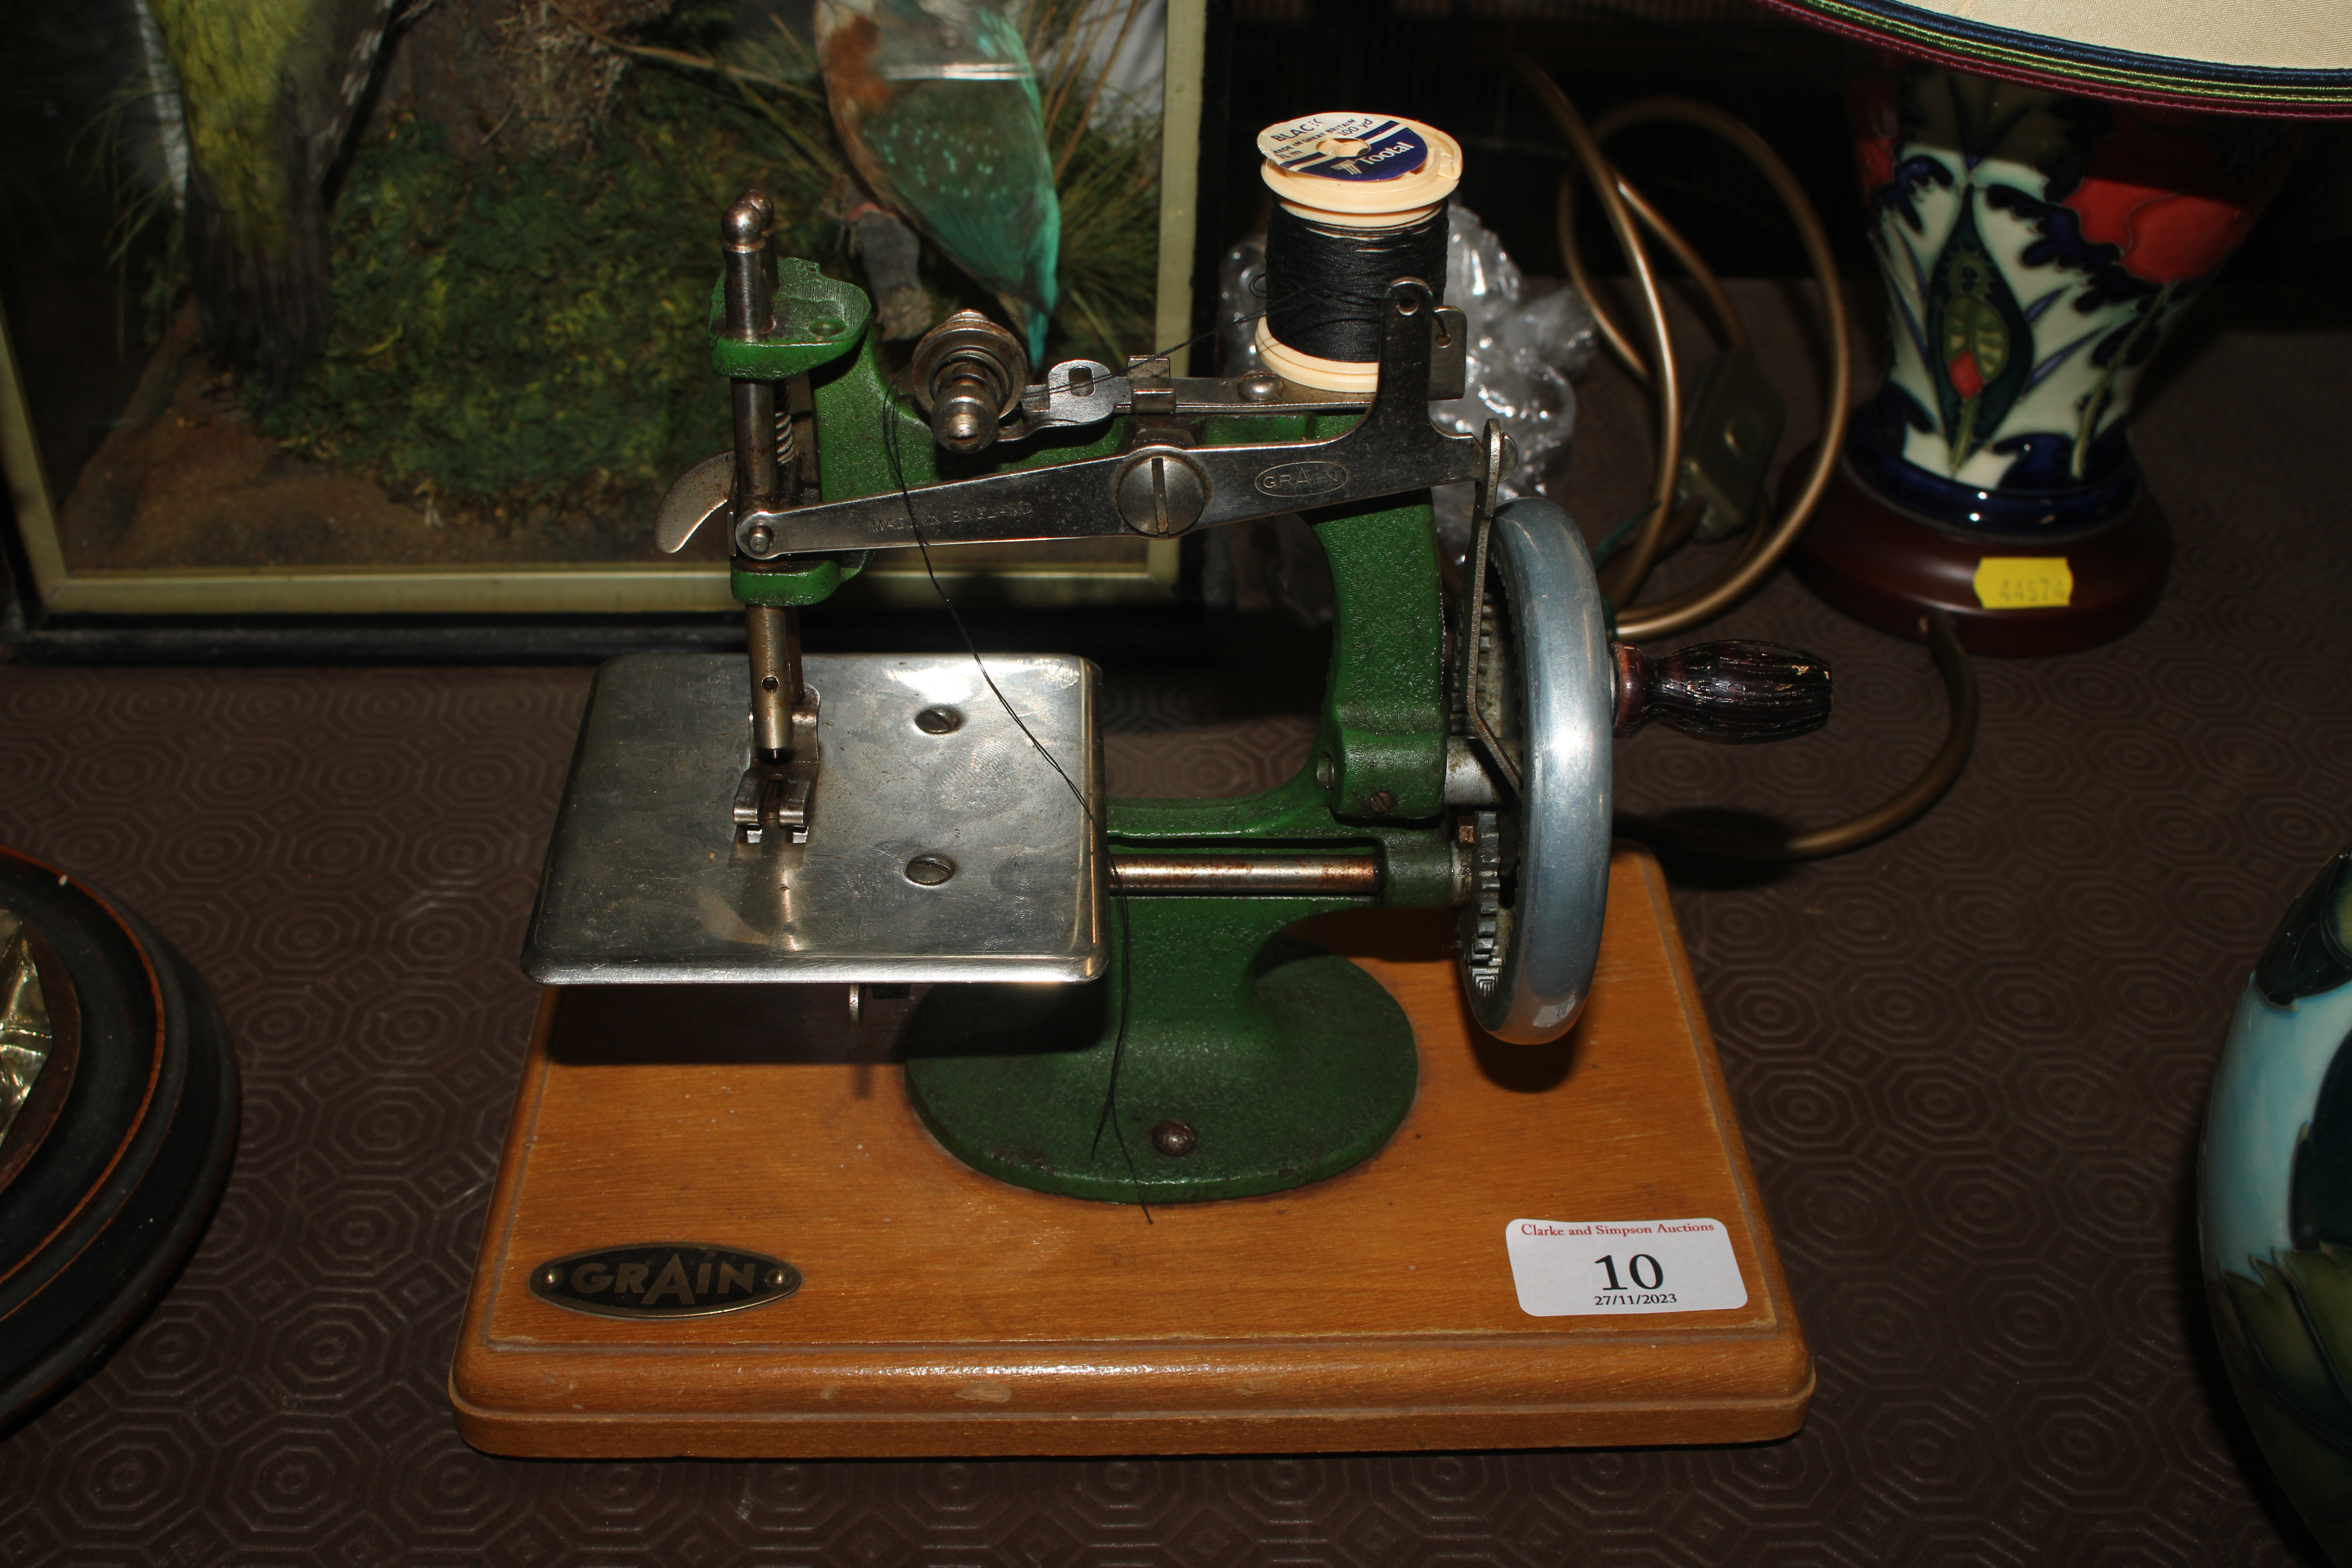 A Grain hand sewing machine